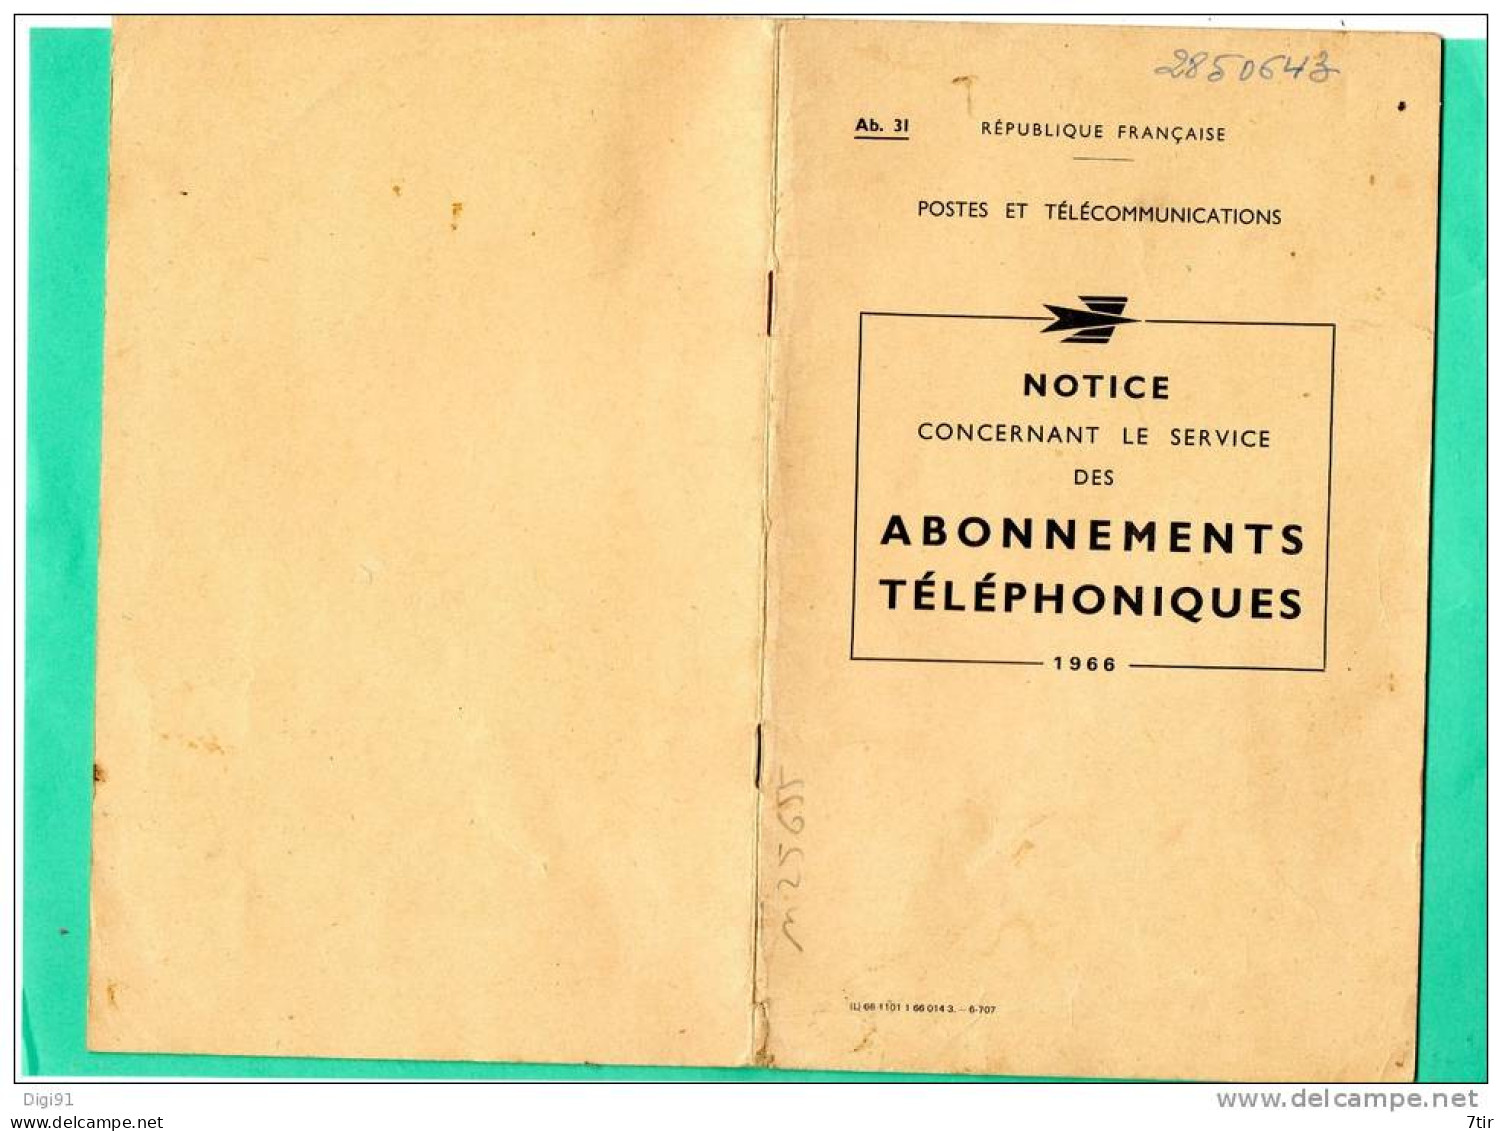 POSTES ET TELECOMMUNICATIONS NOTICE CONCERNANT LES ABONNEMENTS TELEPHONIQUES 1966 - Other Plans